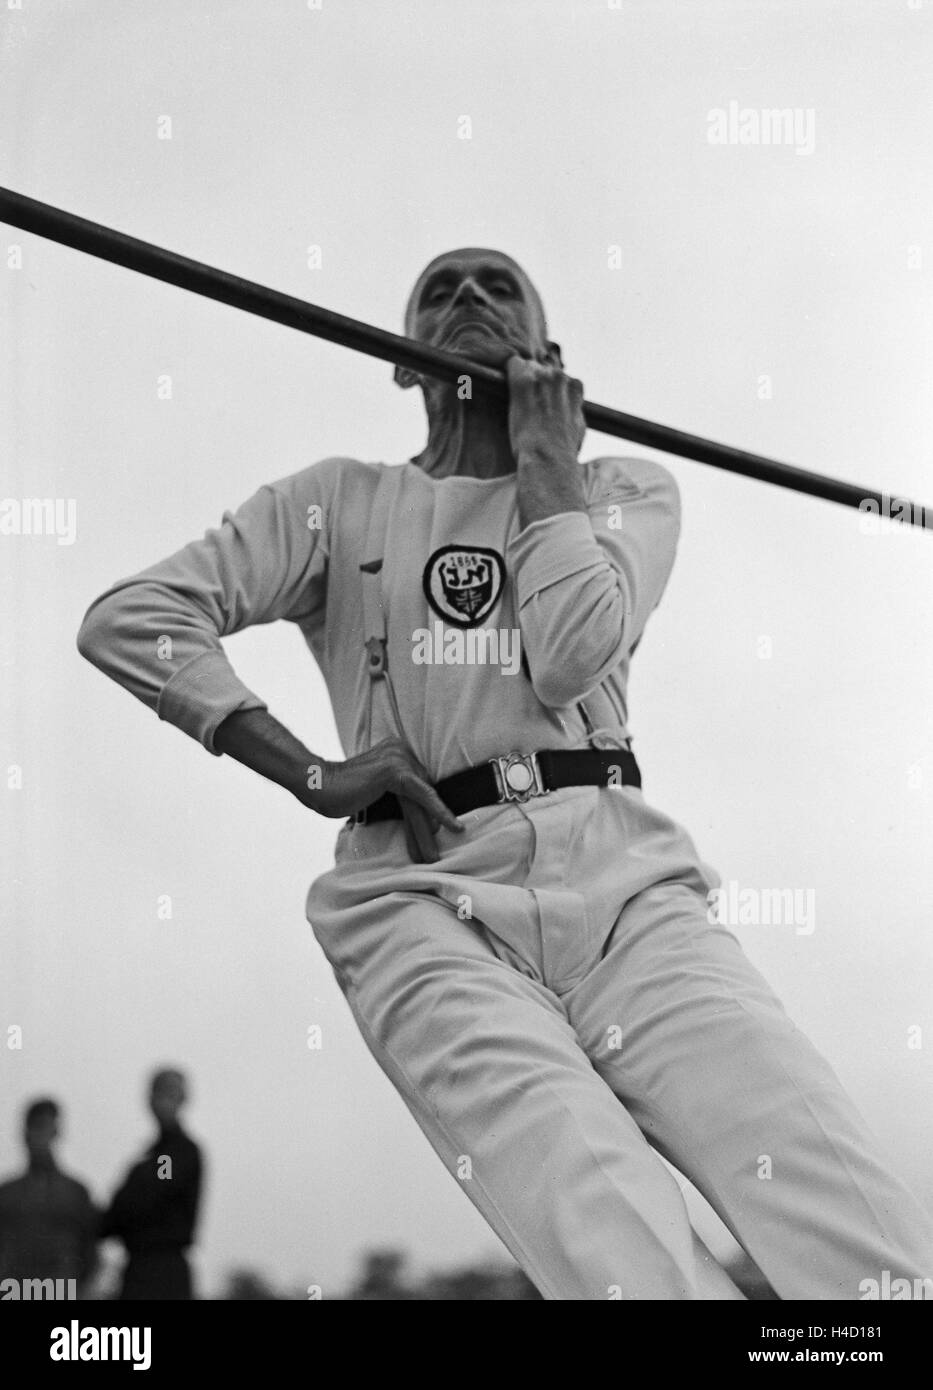 Männer einer Altherrenriege eines Turnvereins bein einer bung, Deutschland 1930er Jahre. Members of a senior department of a gymnastic club exercising, Germany 1930s. Stock Photo